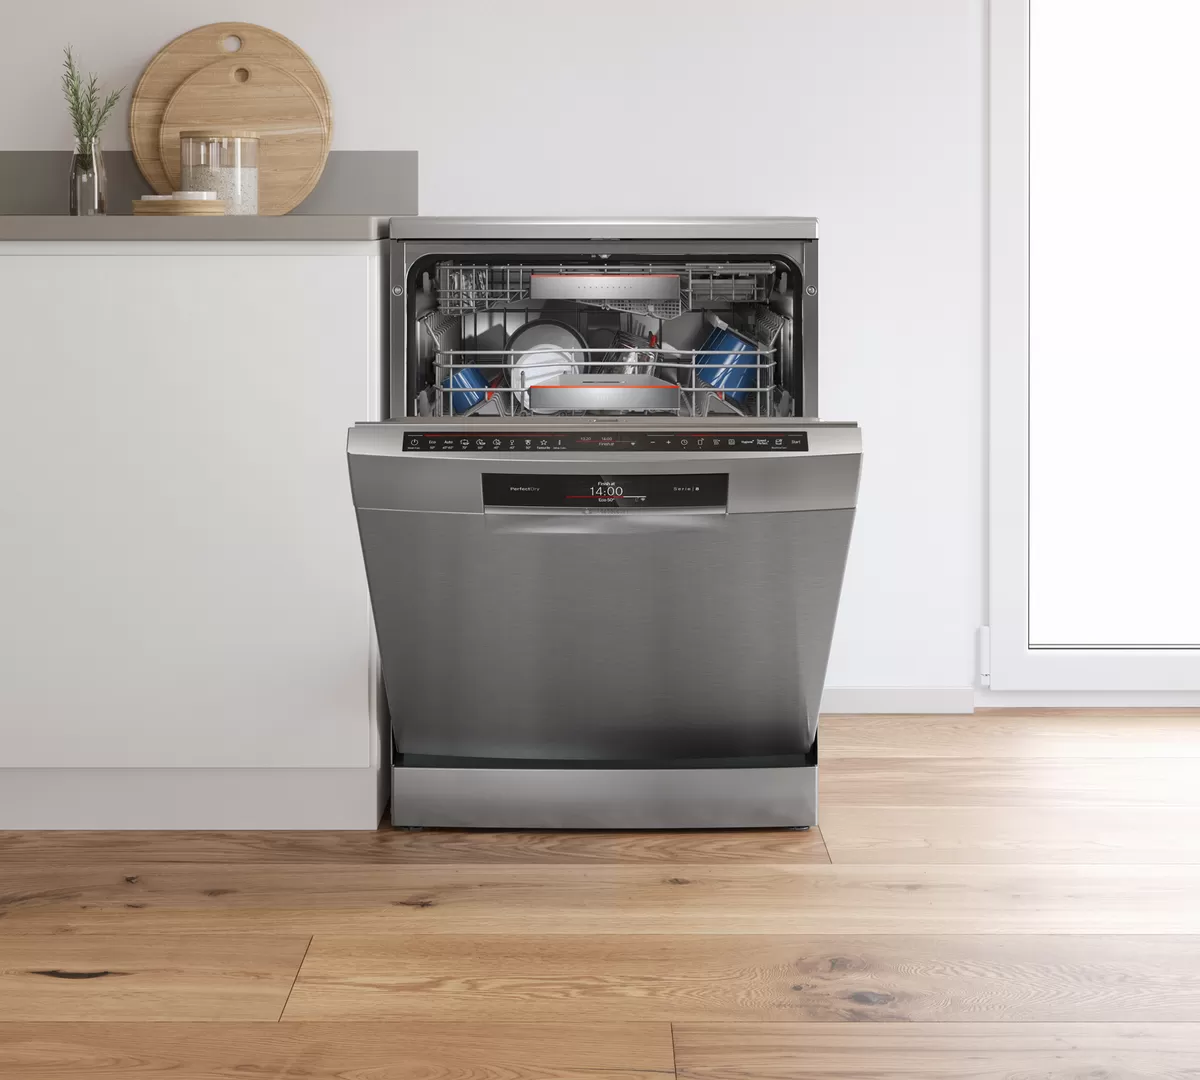 Посудомоечная машина рейтинг цена качество 60. Посудомоечная машина Bosch 60 отдельностоящая. Посудомойка Bosch 60 отдельностоящая. Посудомоечная машина Bosch 60 встраиваемая. Посудомоечная машина бош 60 посудомоечная встраиваемая.